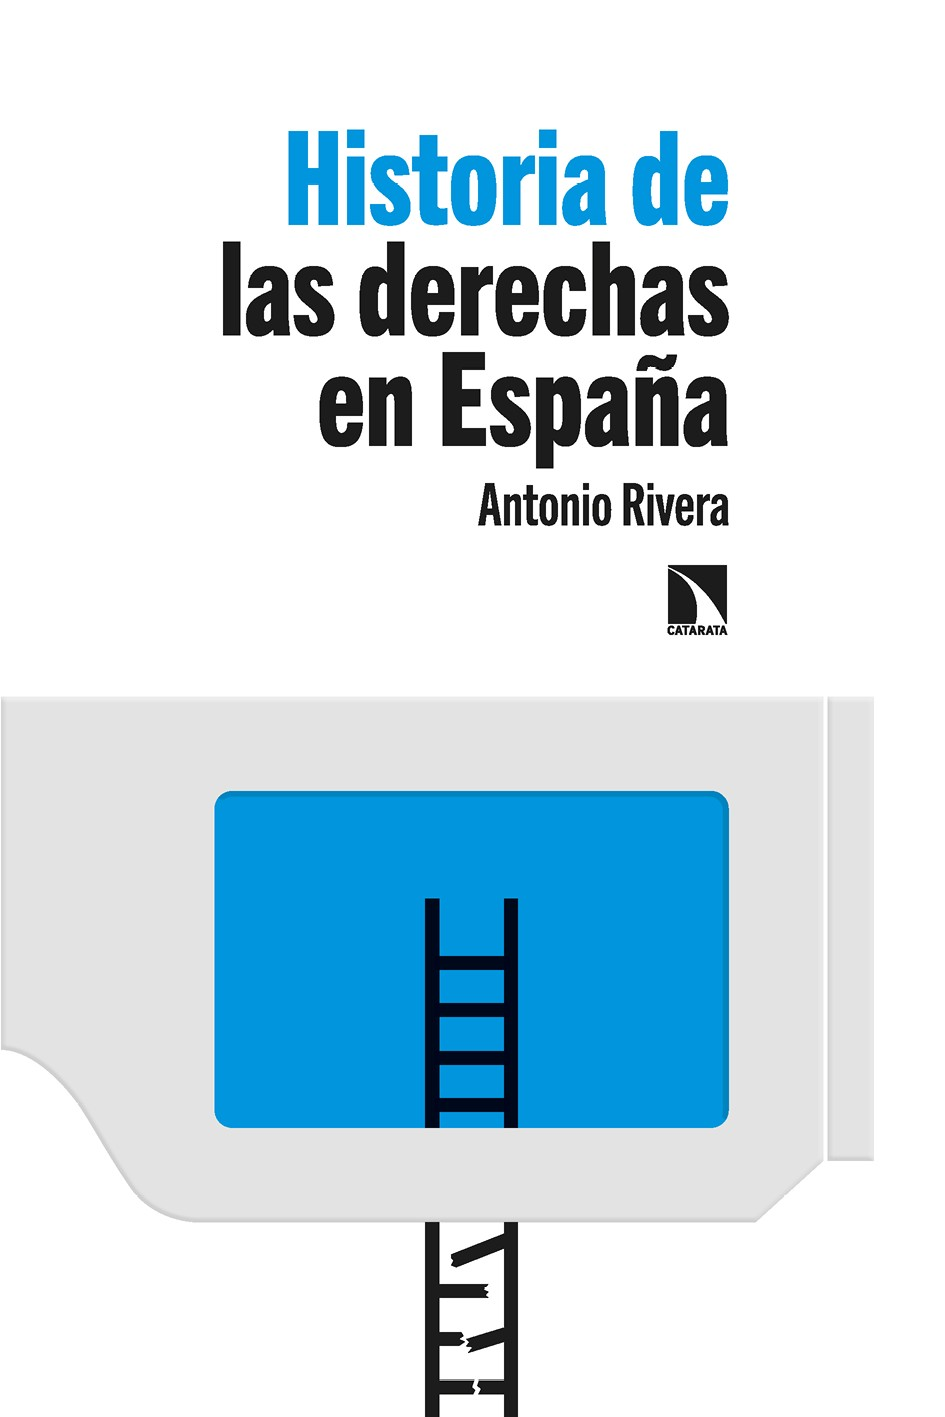 Historia de las derechas en España - image 1